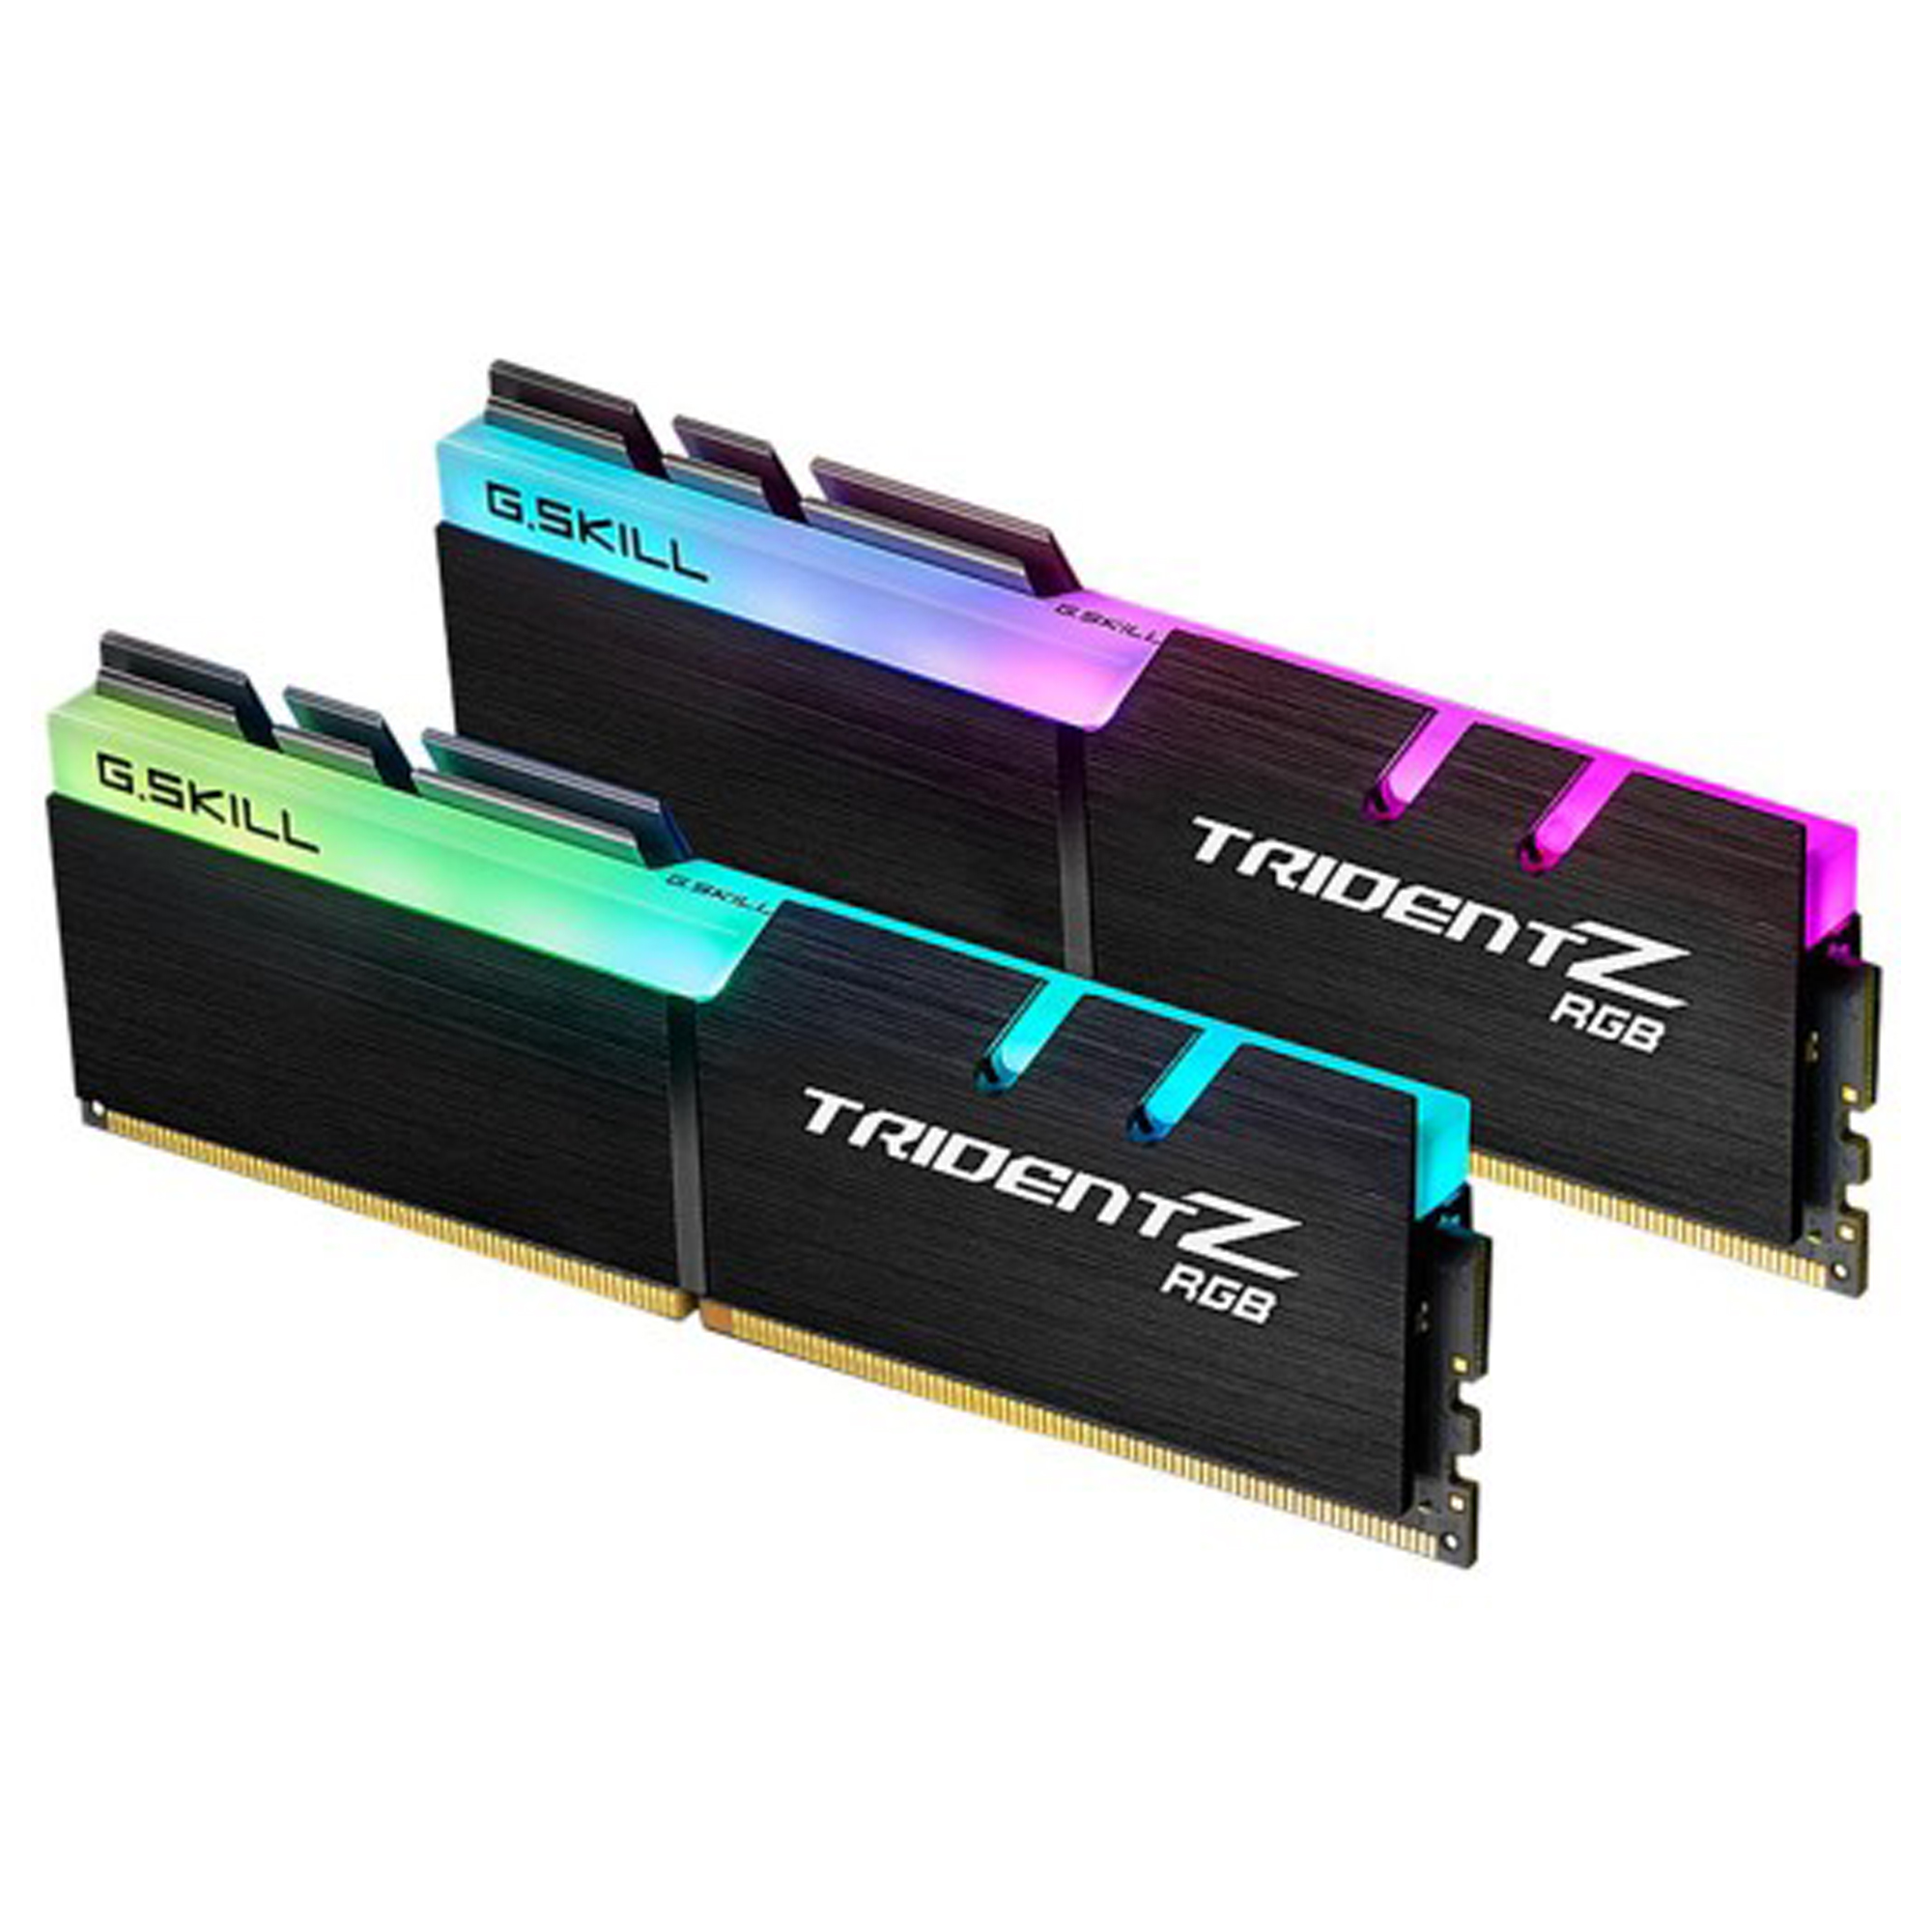 نقد و بررسی رم دسکتاپ DDR4 دو کاناله 3200 مگاهرتز CL16 جی اسکیل سری TRIDENT Z RGB ظرفیت 16 گیگابایت بسته دو عددی توسط خریداران